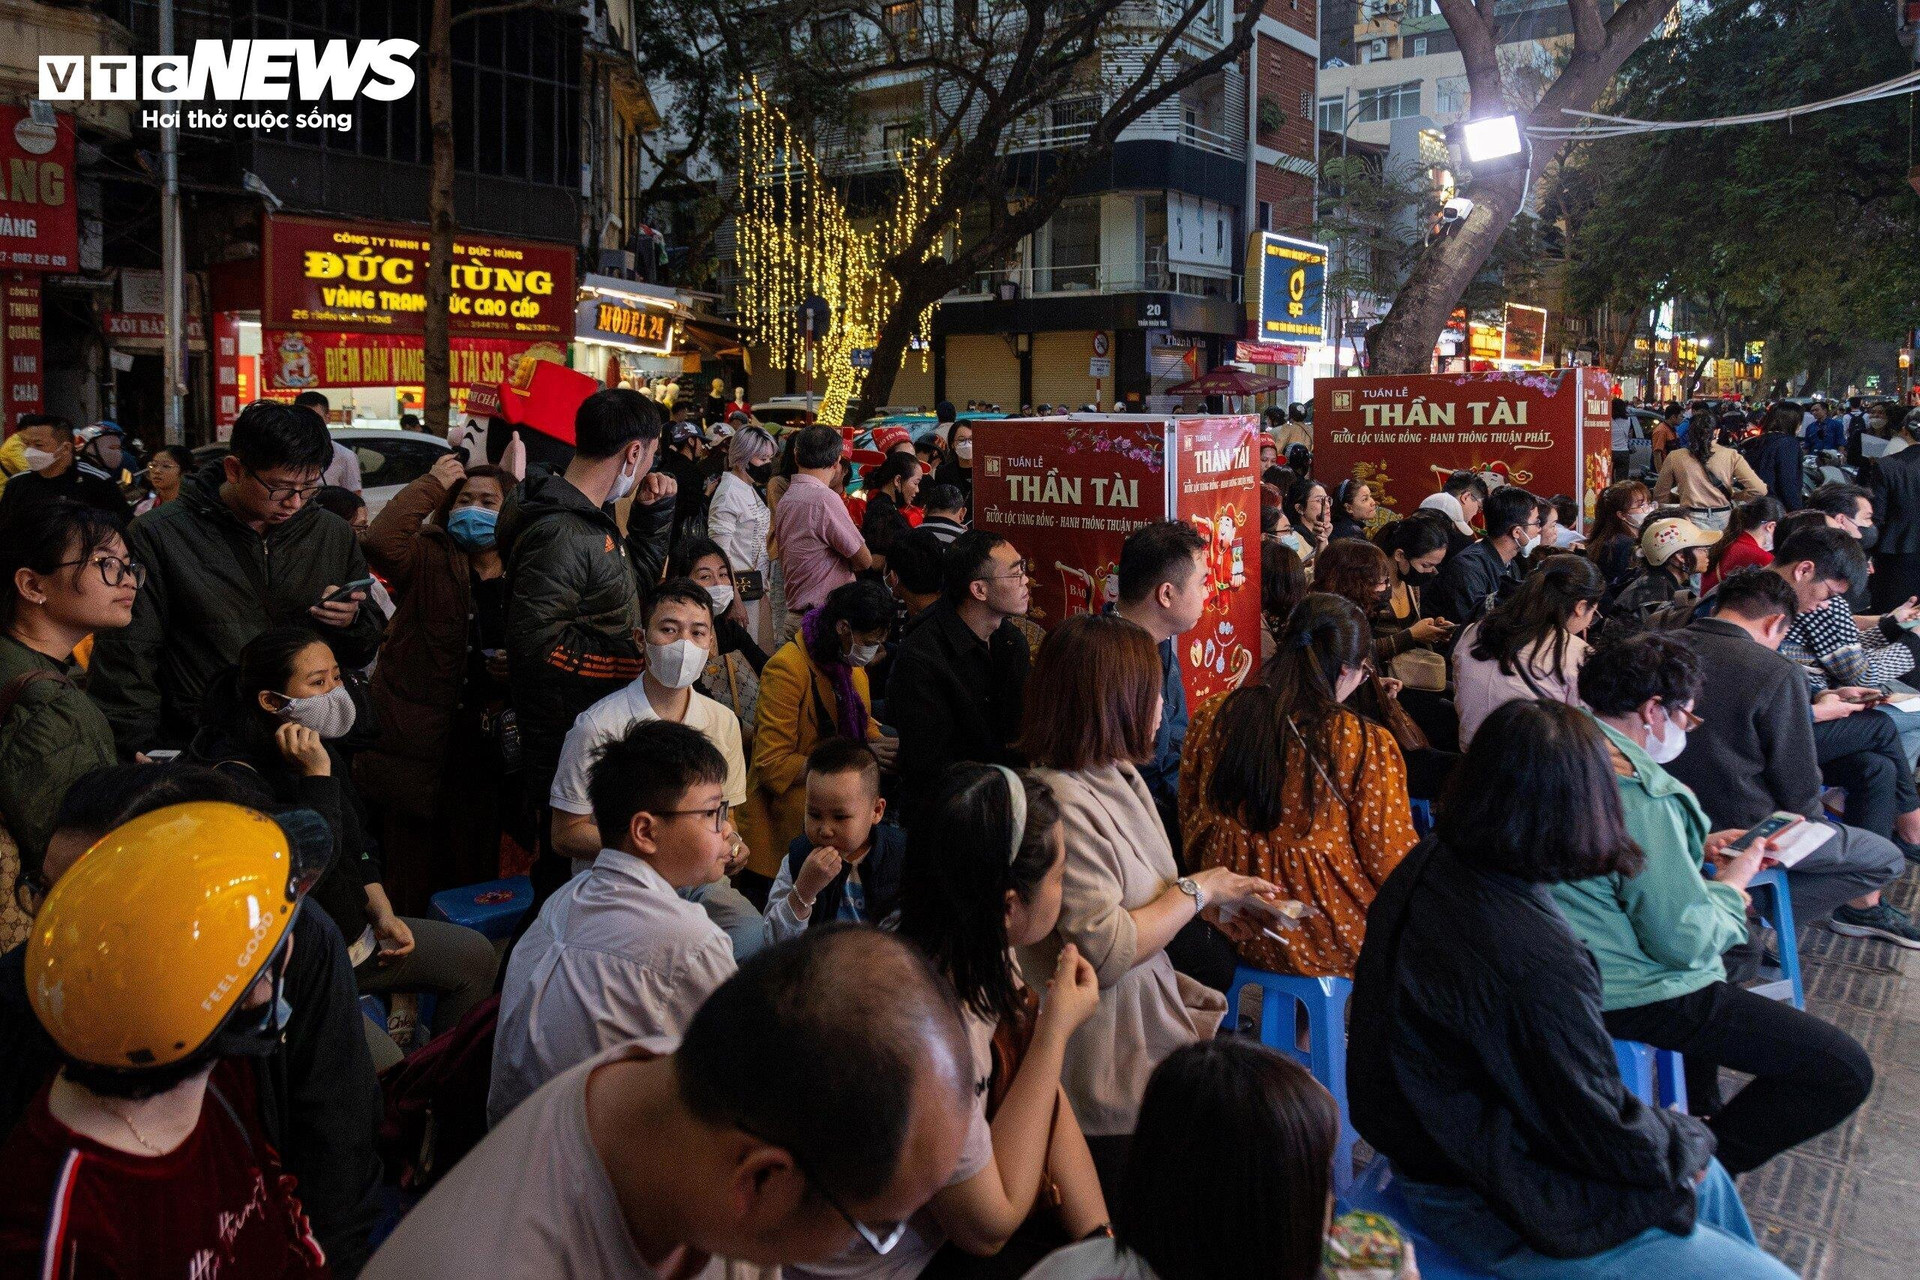 Ghi nhận của PV VTC News vào chiều tối ngày vía Thần Tài (19/2), lượng khách đổ về mua vàng tại các cửa hàng lớn trên phố Trần Nhân Tông vẫn rất đông đúc, dù trước đó các cửa hàng này đã liên tục đón lượng khách khổng lồ suốt cả ngày.